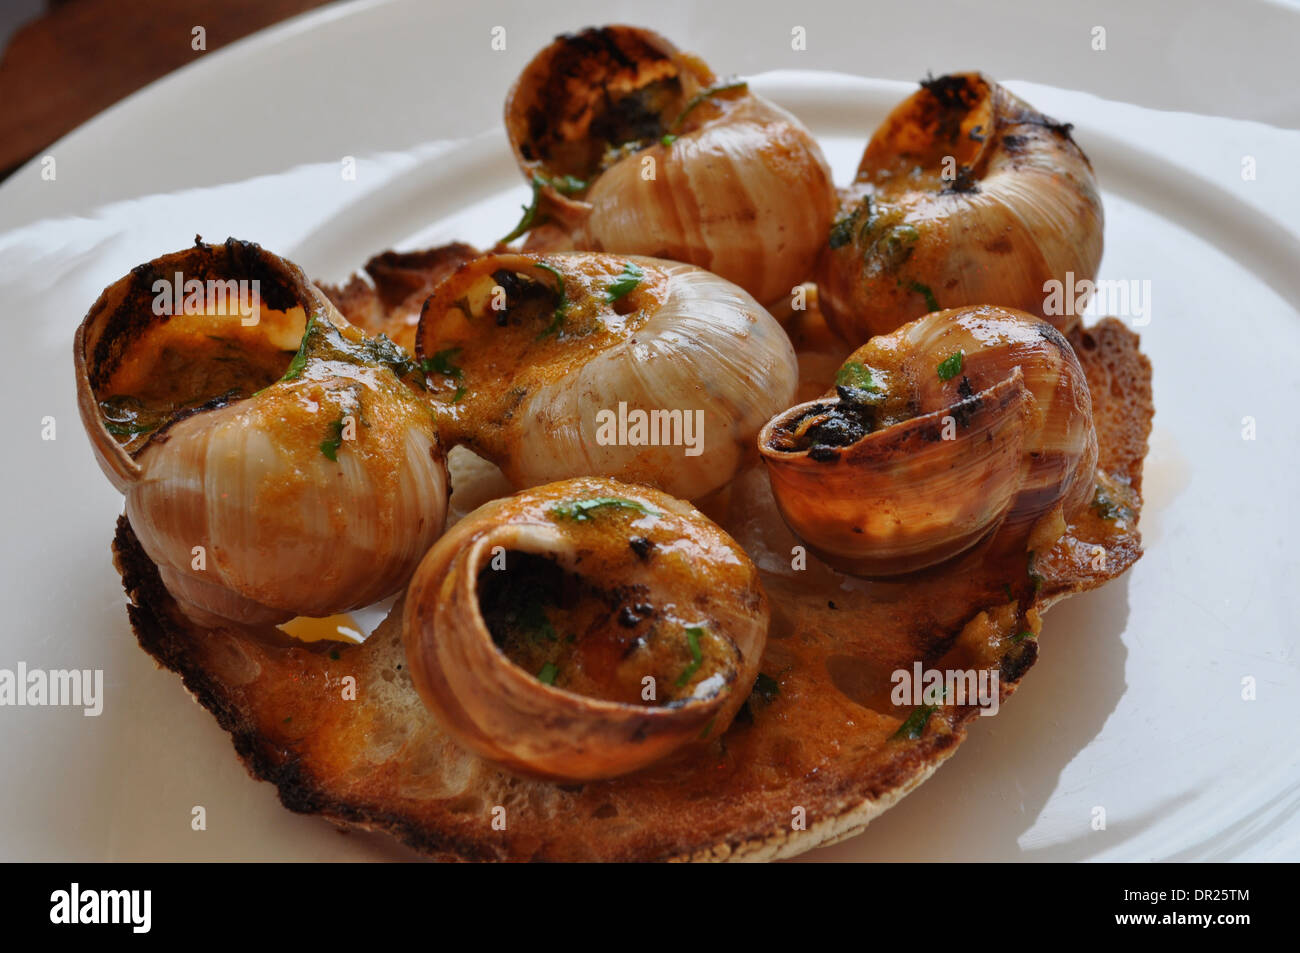 Schnecken (Schnecken) mit Knoblauch und Tomaten, serviert auf geröstetem Sauerteigbrot in ein feines restaurant Stockfoto